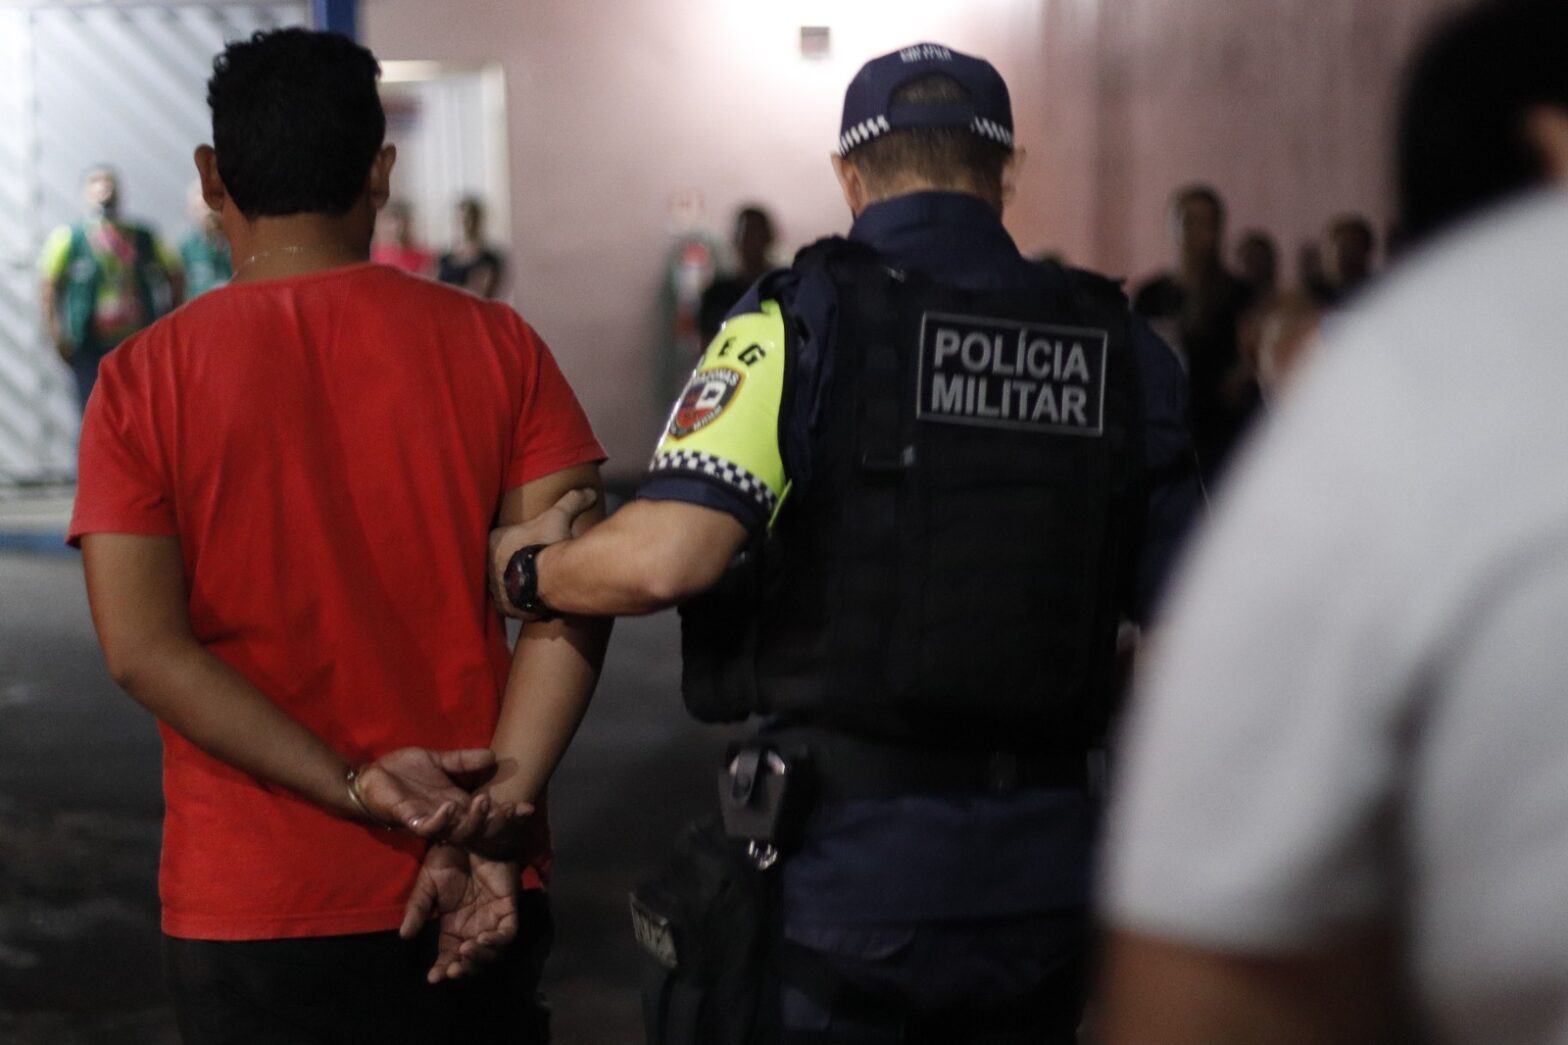 De acordo com o documento, Manaus teve uma taxa de 53,4 assassinatos para cada grupo de 100 mil pessoas - Foto: Licon Ferreira/ Sejusc